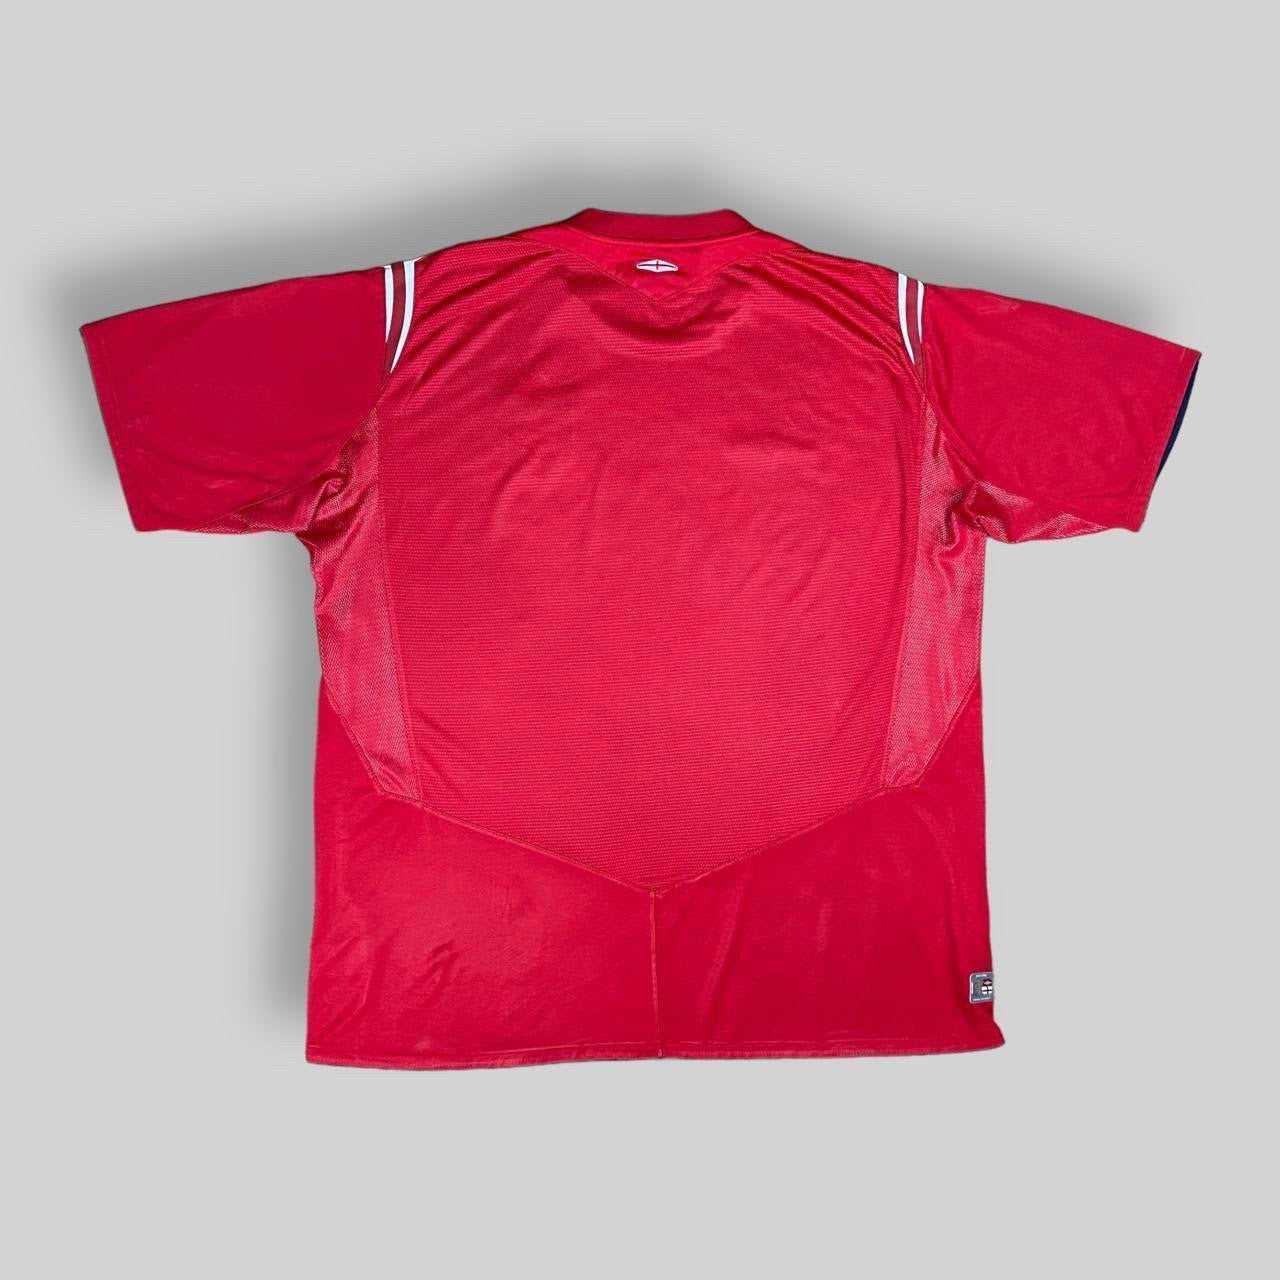 Umbro England 2004/06 Away Shirt (XXL)